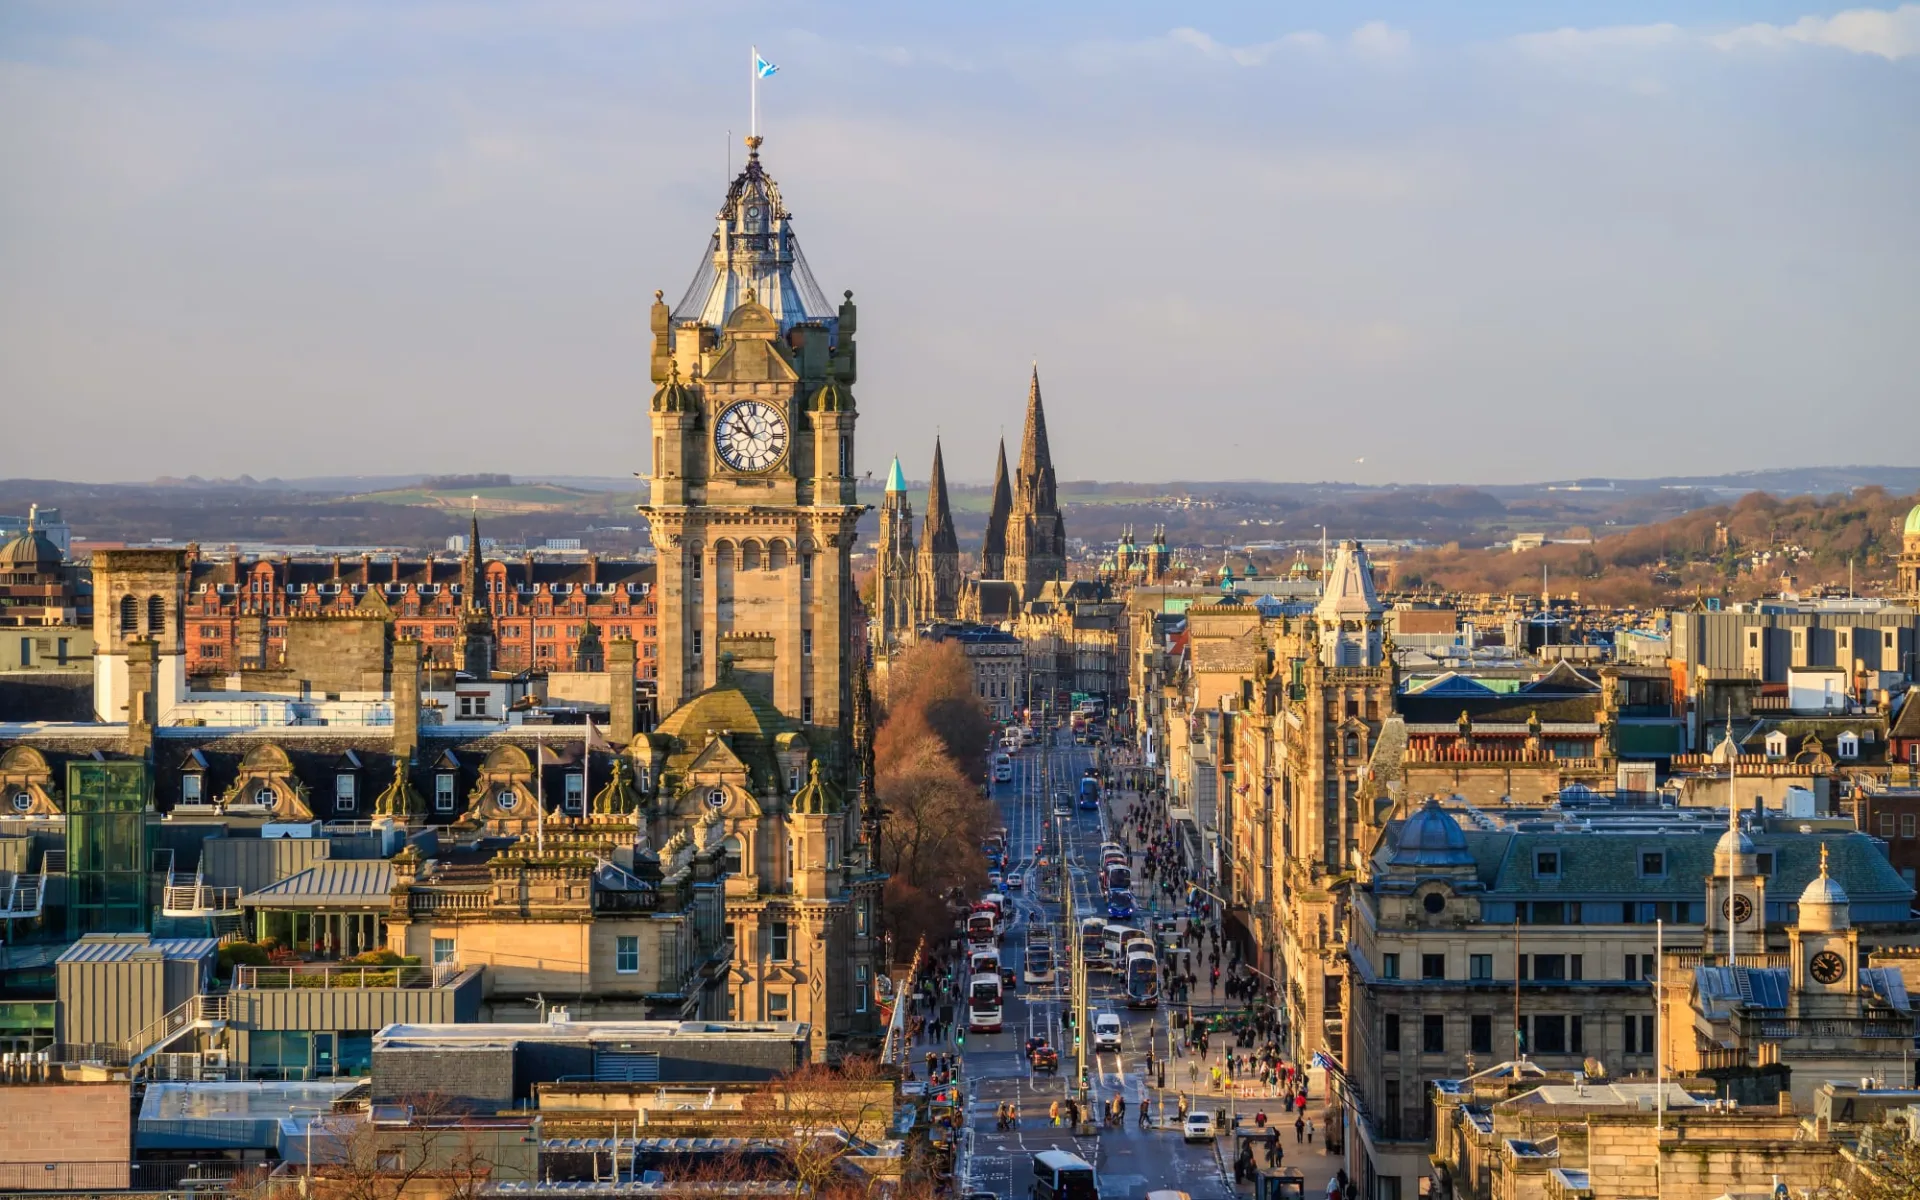 Schottland kompakt ab Edinburgh: Old town Edinburgh and Edinburgh castle